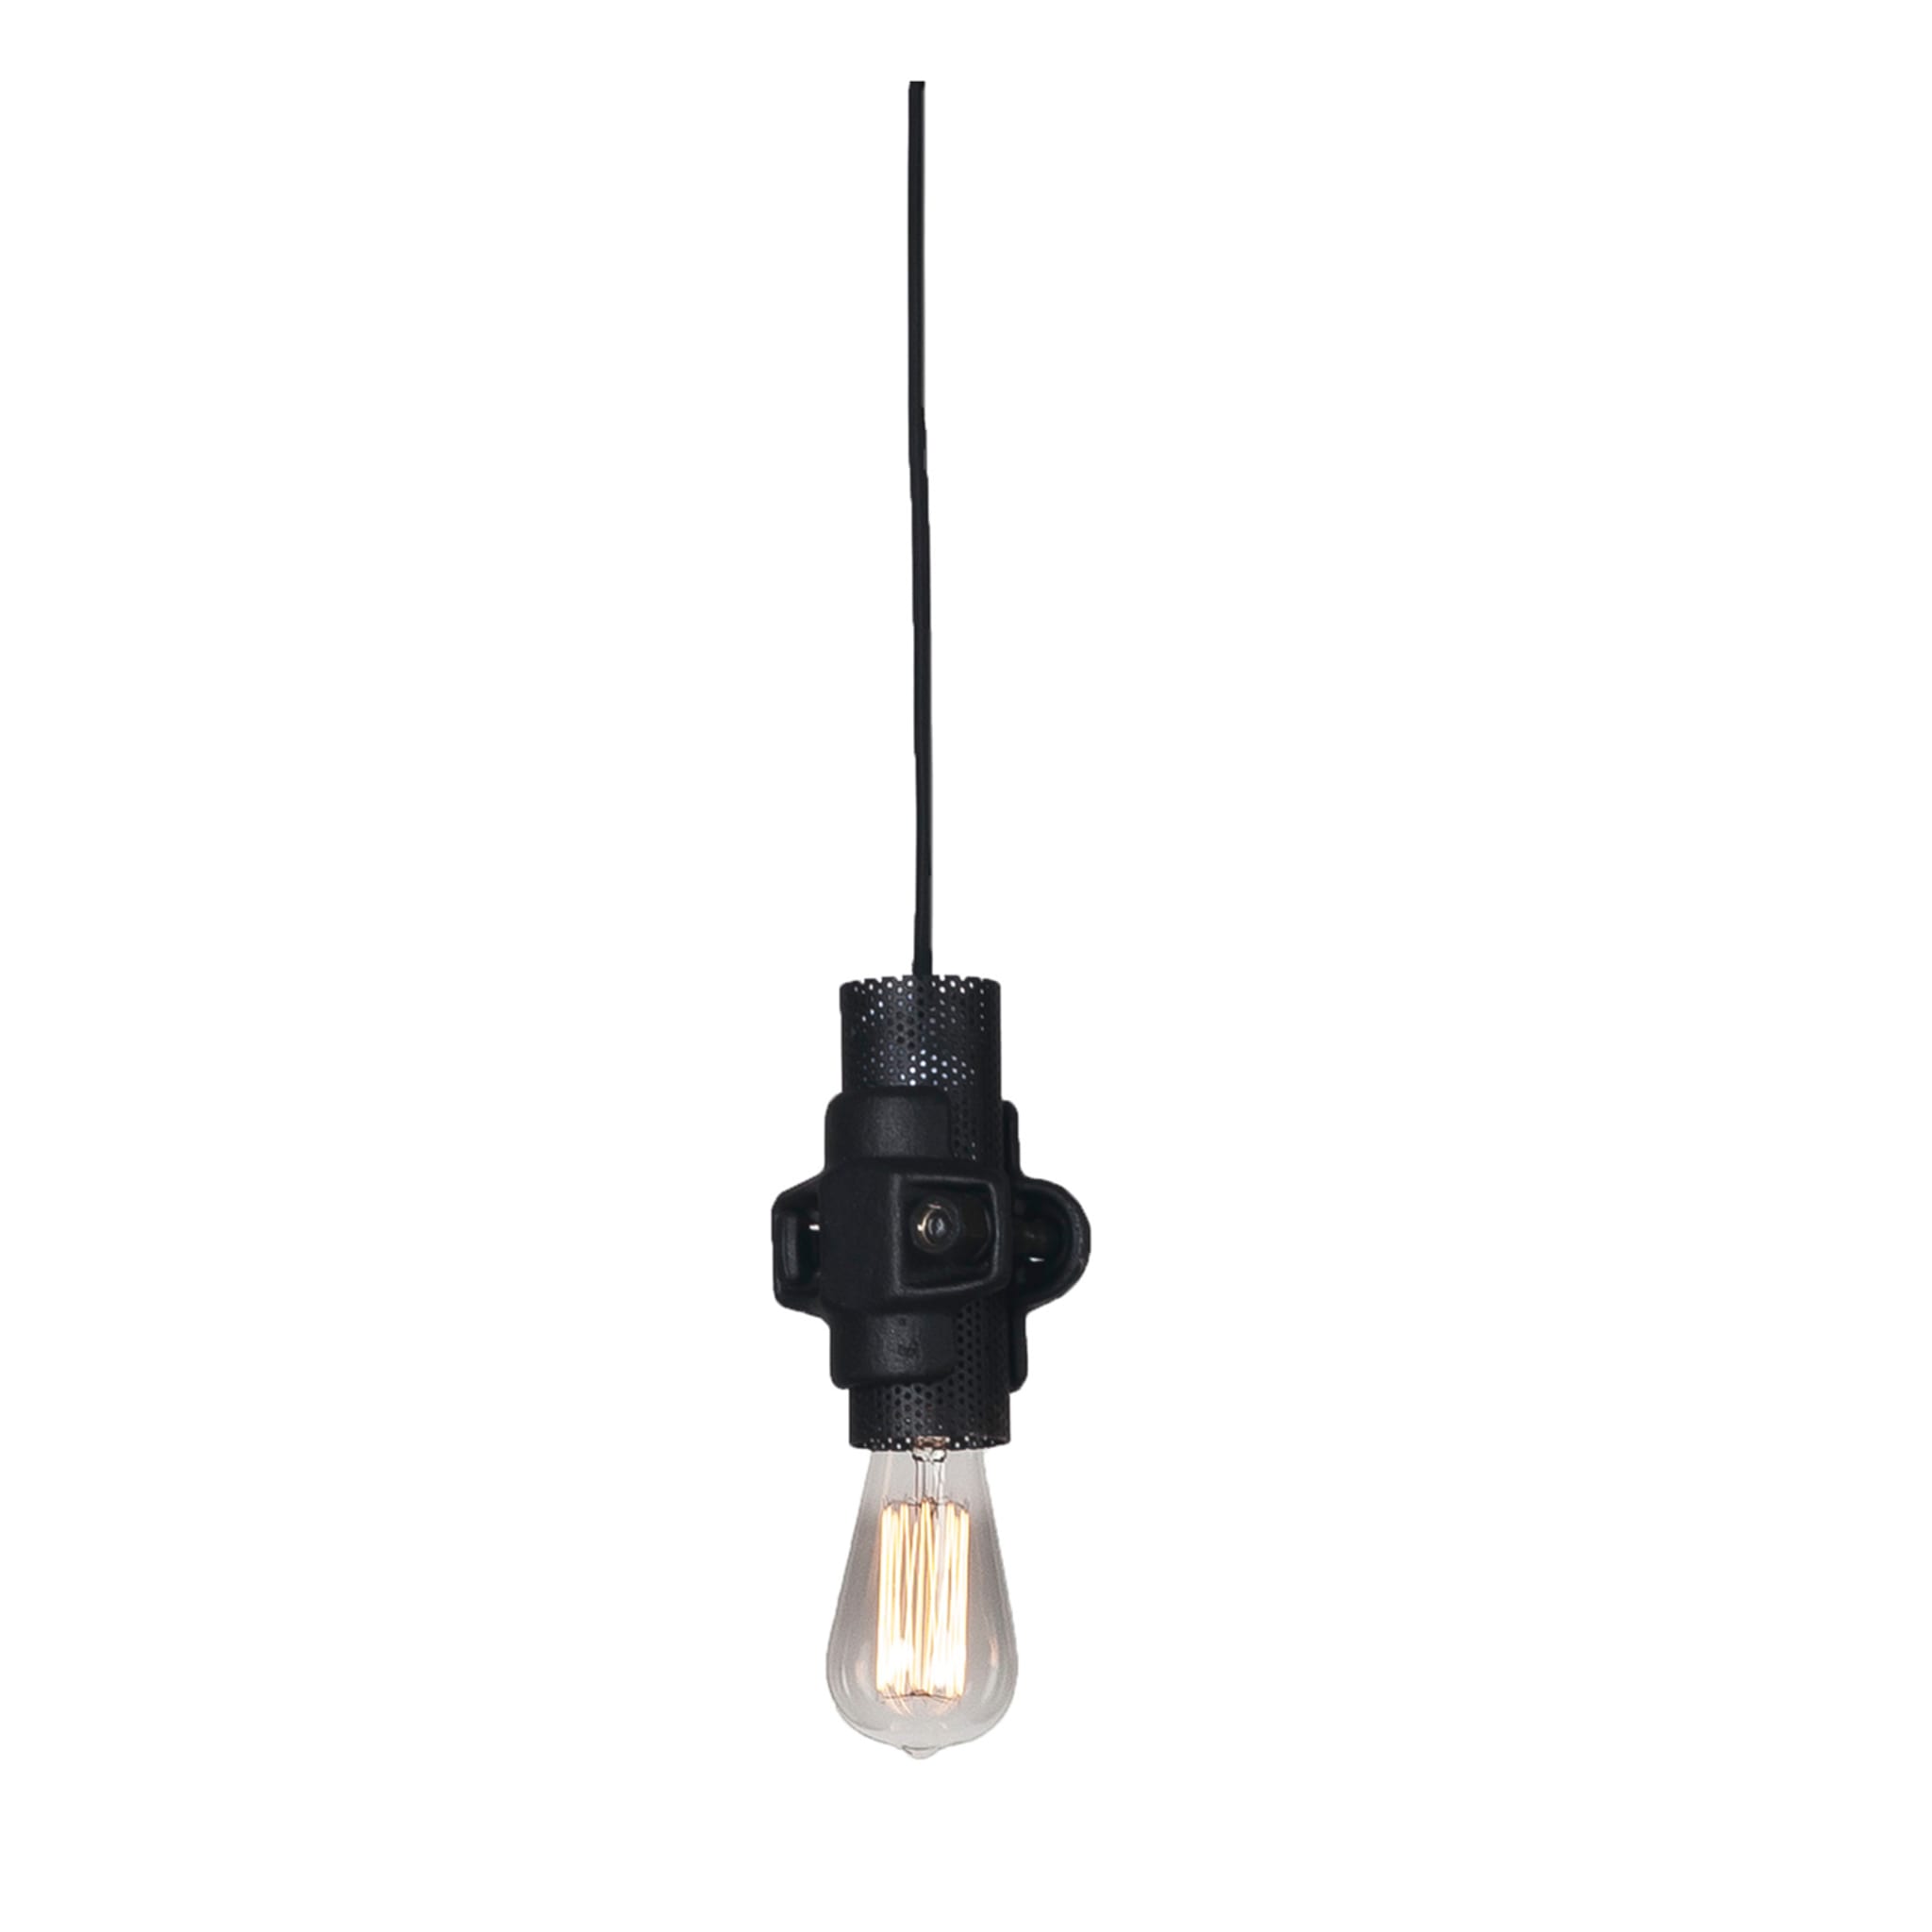 Nando Small Black Pendant Lamp by Luca De Bona & Dario De Meo - Main view